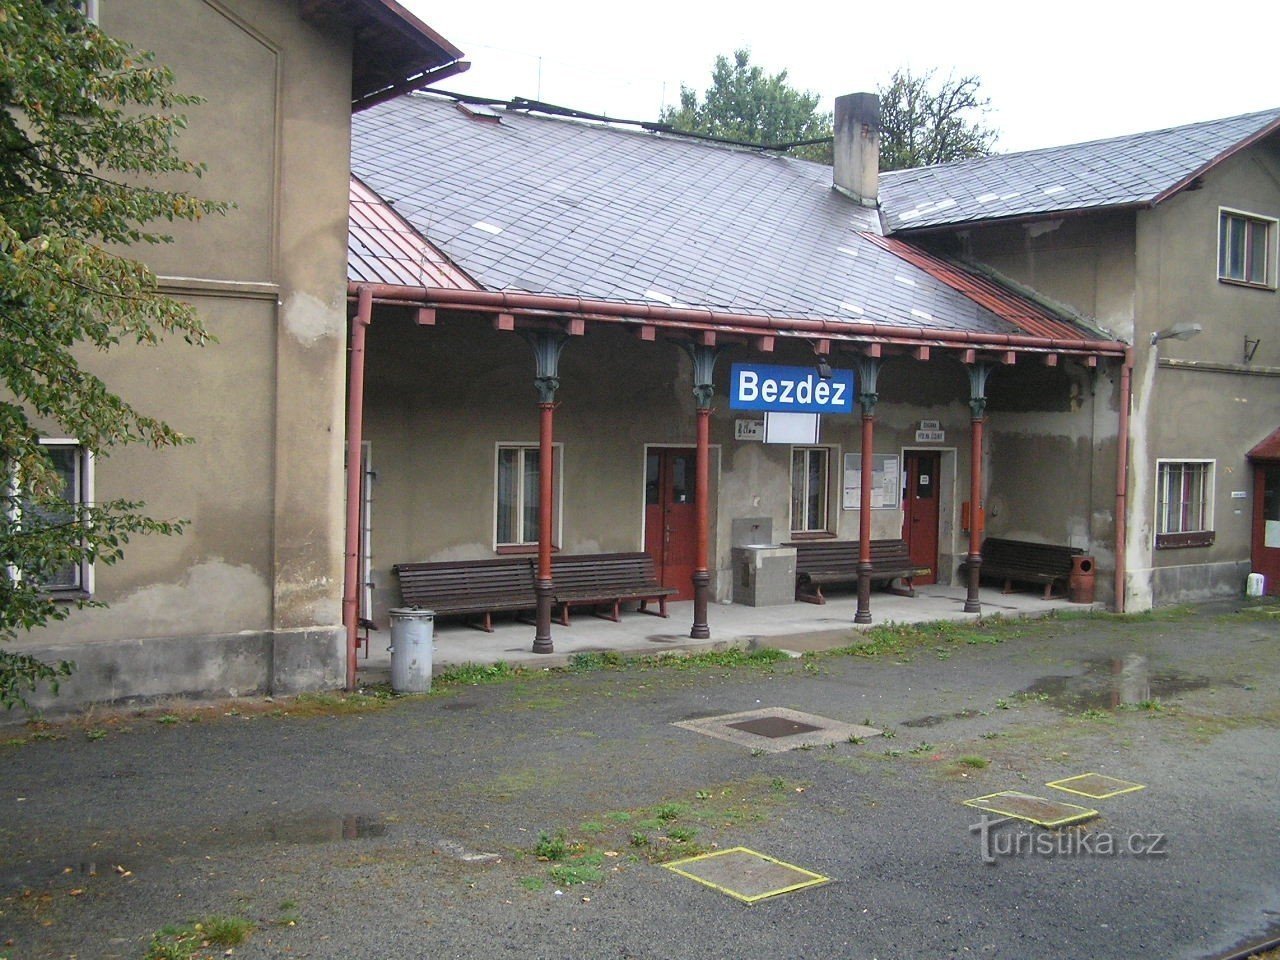 Stacja kolejowa Bezděz